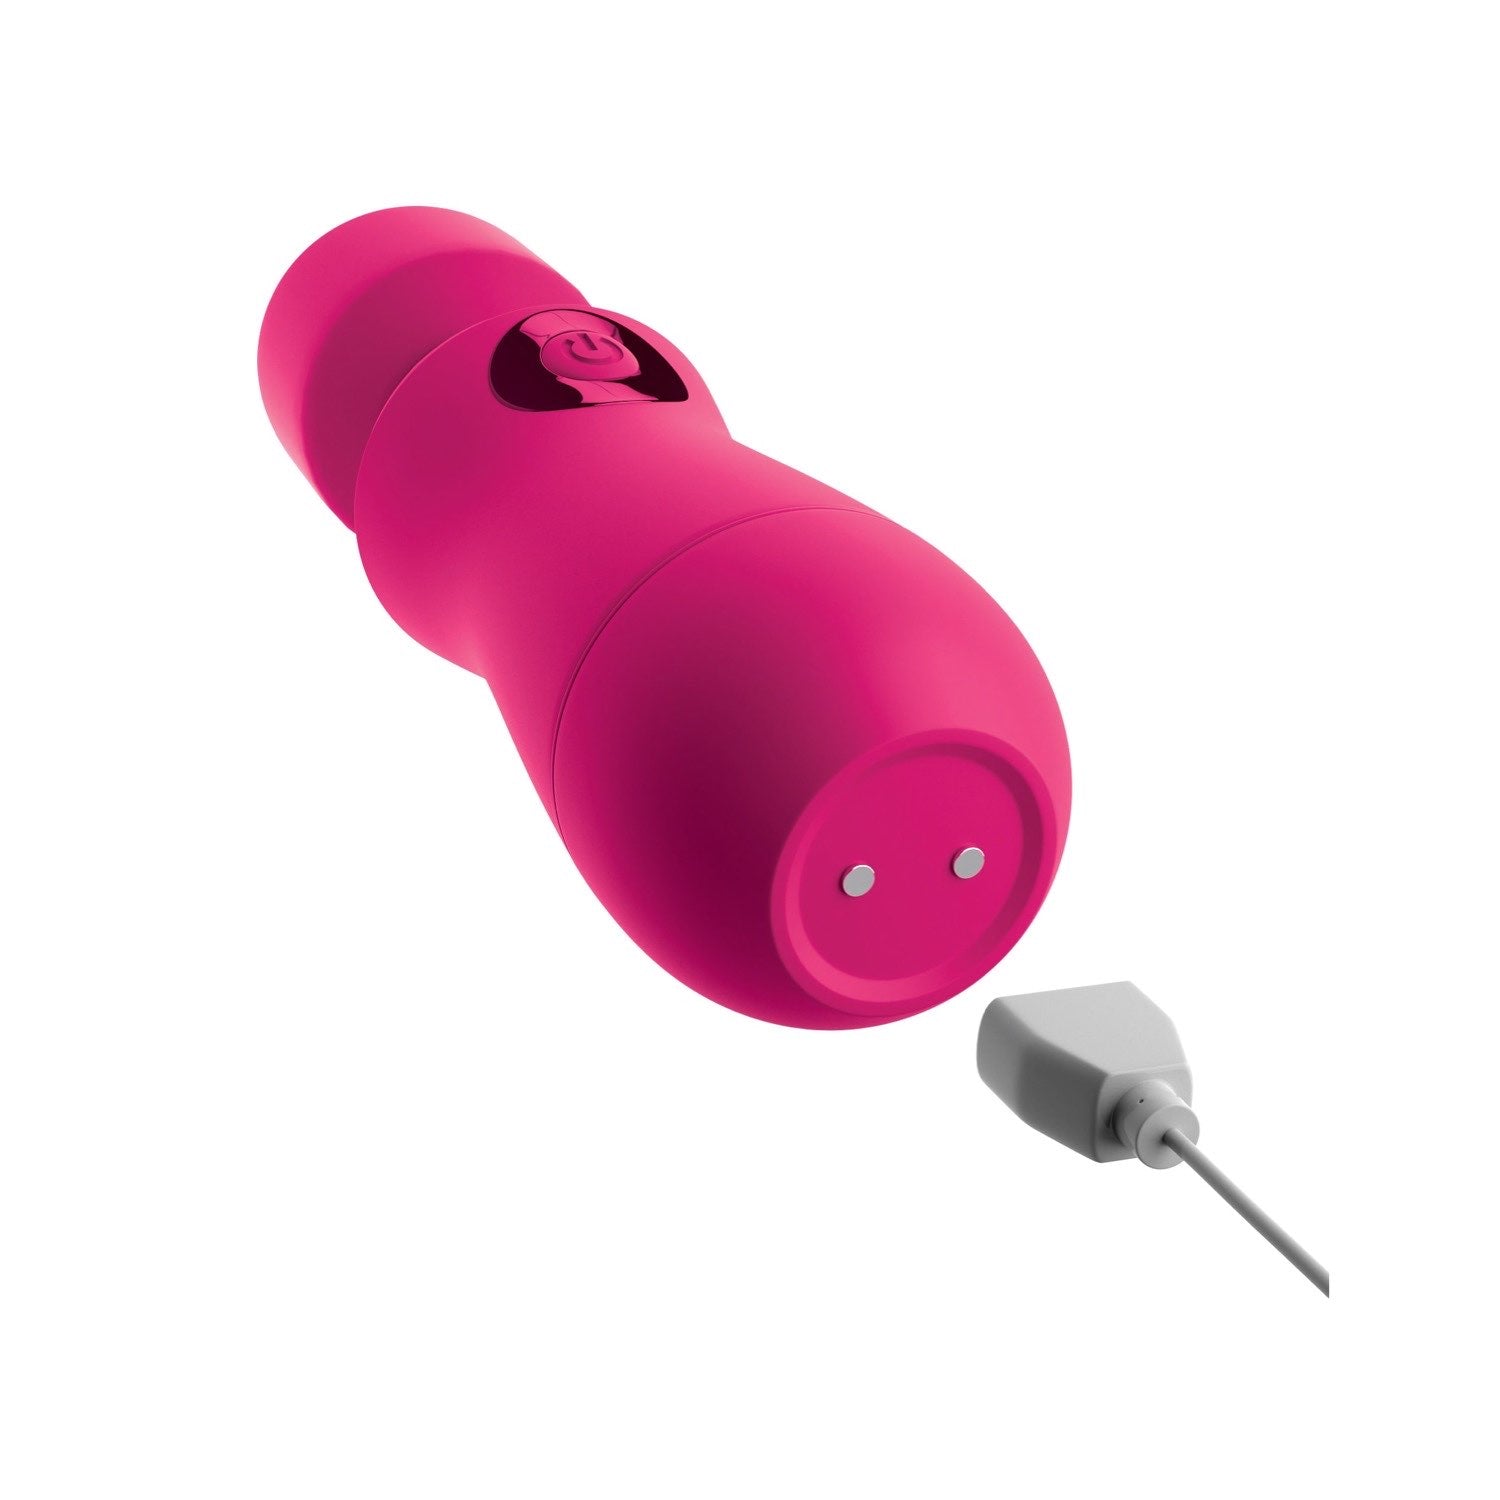 我的天啊！ 我的天啊！魔杖 #Enjoy - 紫红色 USB 充电按摩棒 by Pipedream